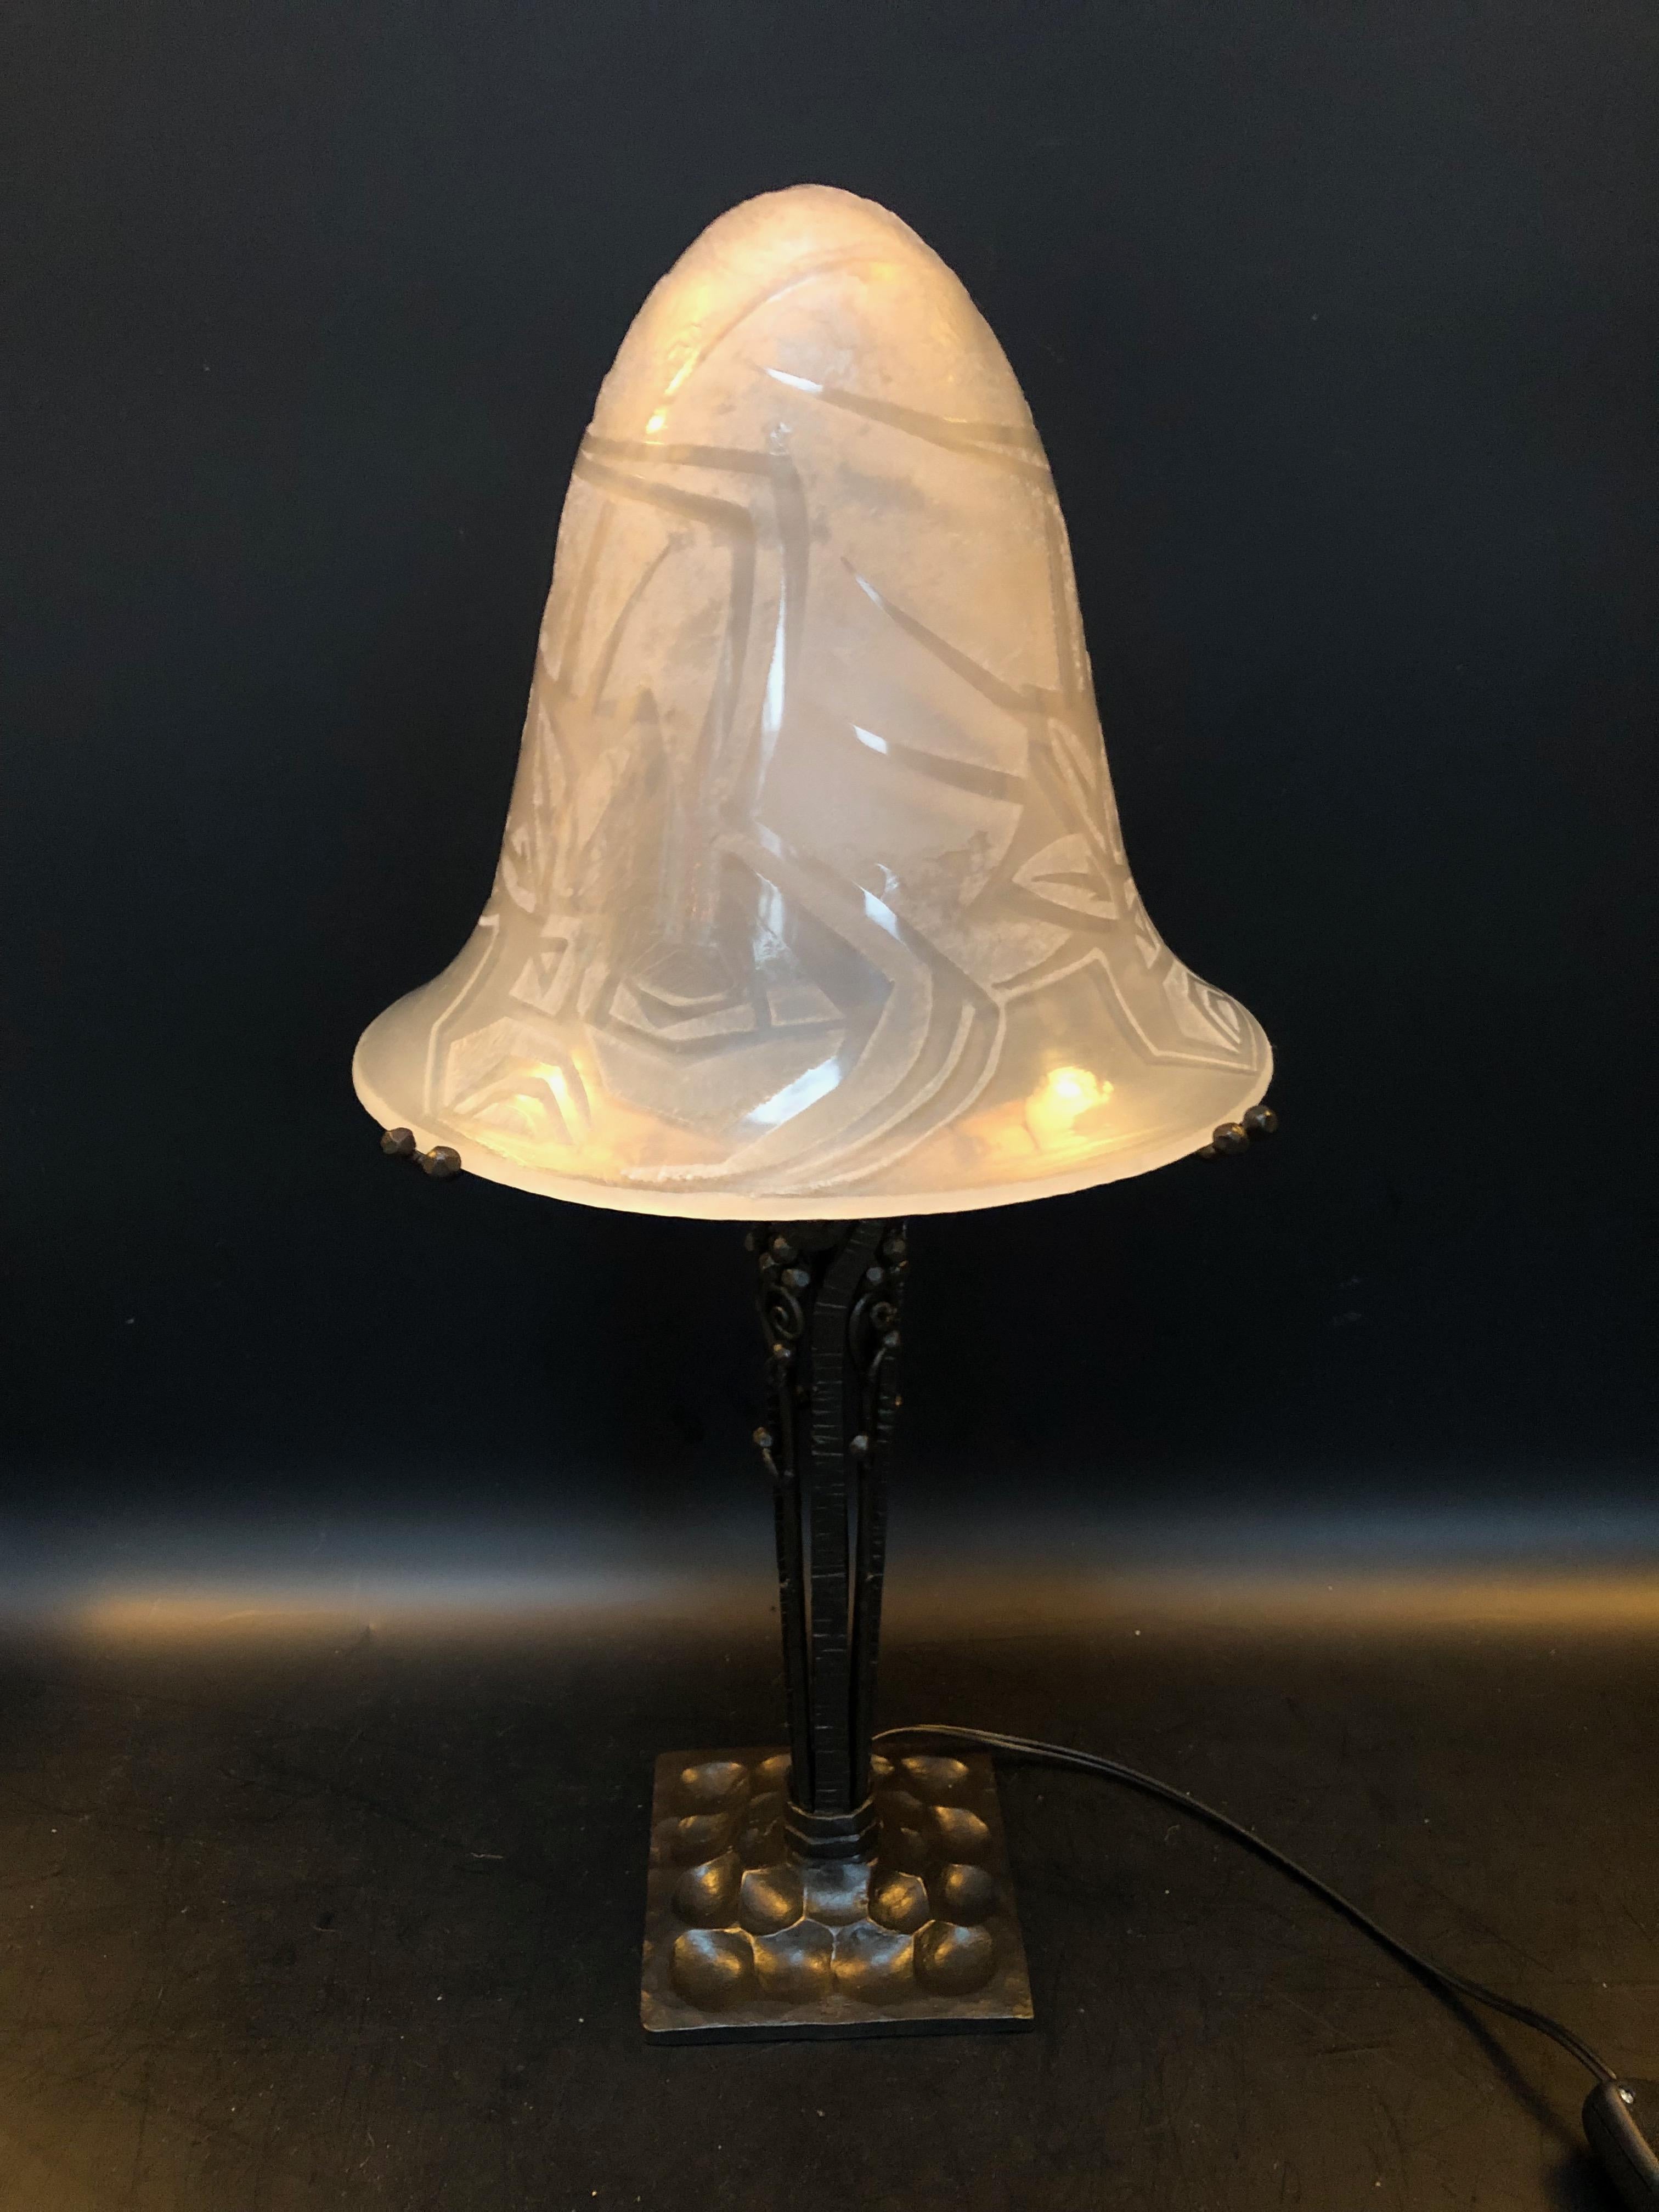 Art-déco-Lampe, um 1925.
Fuß aus Schmiedeeisen, gestempelt P. Kiss.
Muschel aus säuregeätztem Weißglas, signiert Noverdy.
In perfektem Zustand und elektrifiziert.

Gesamthöhe: 44 cm
Sockel: 10,5cm x 10,5cm
Durchmesser der Schale: 21 cm

Paul Kiss,